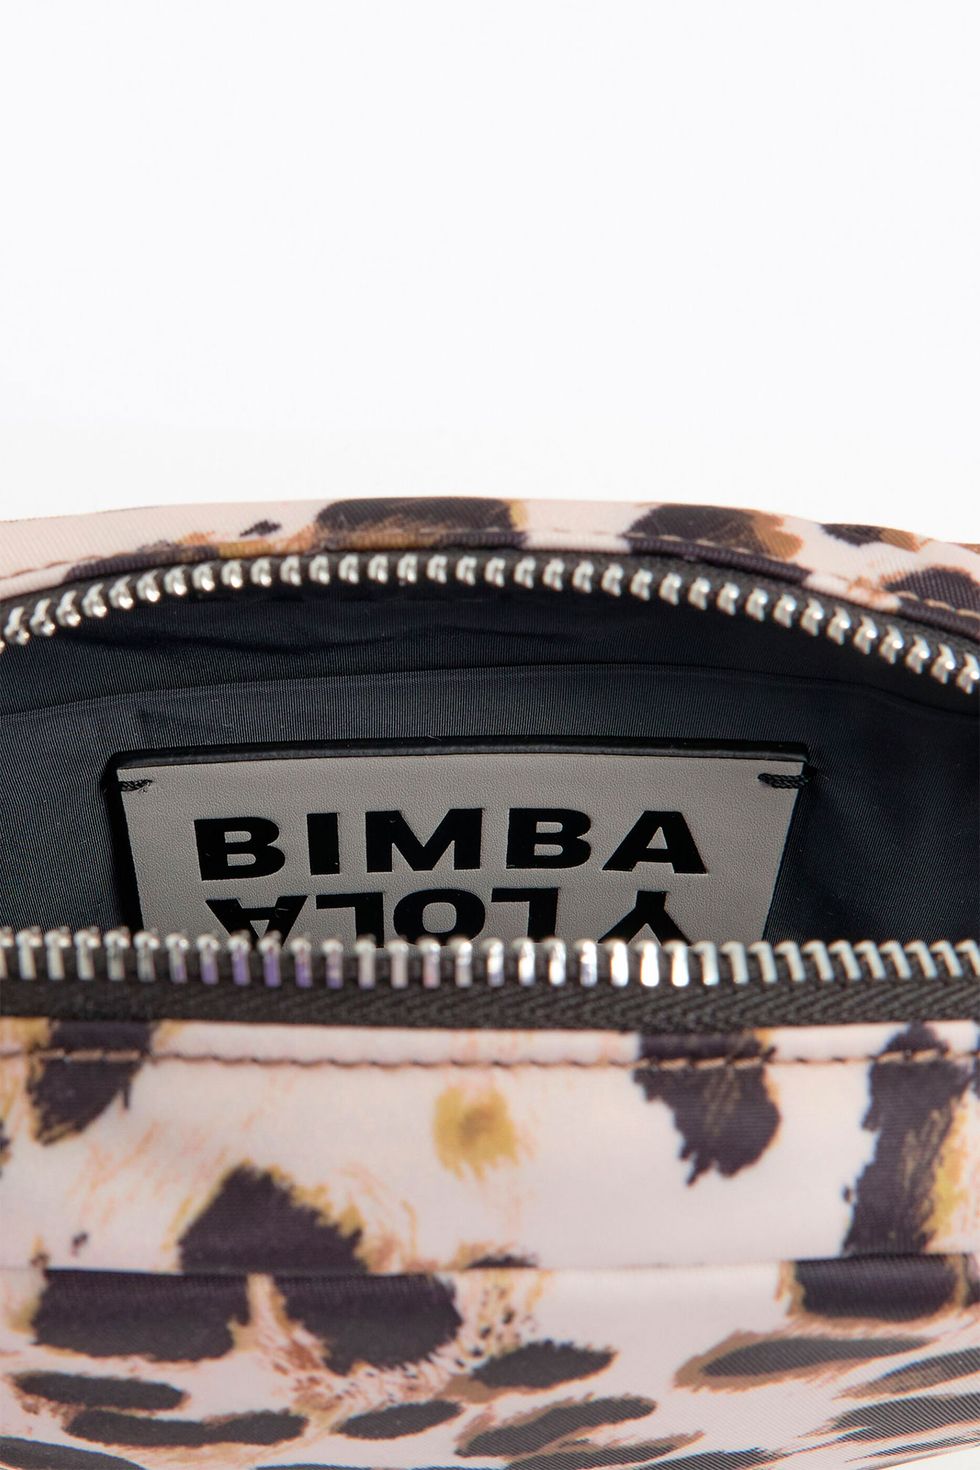 Bimba y Lola rebaja su bolso bandolera emblema de leopardo